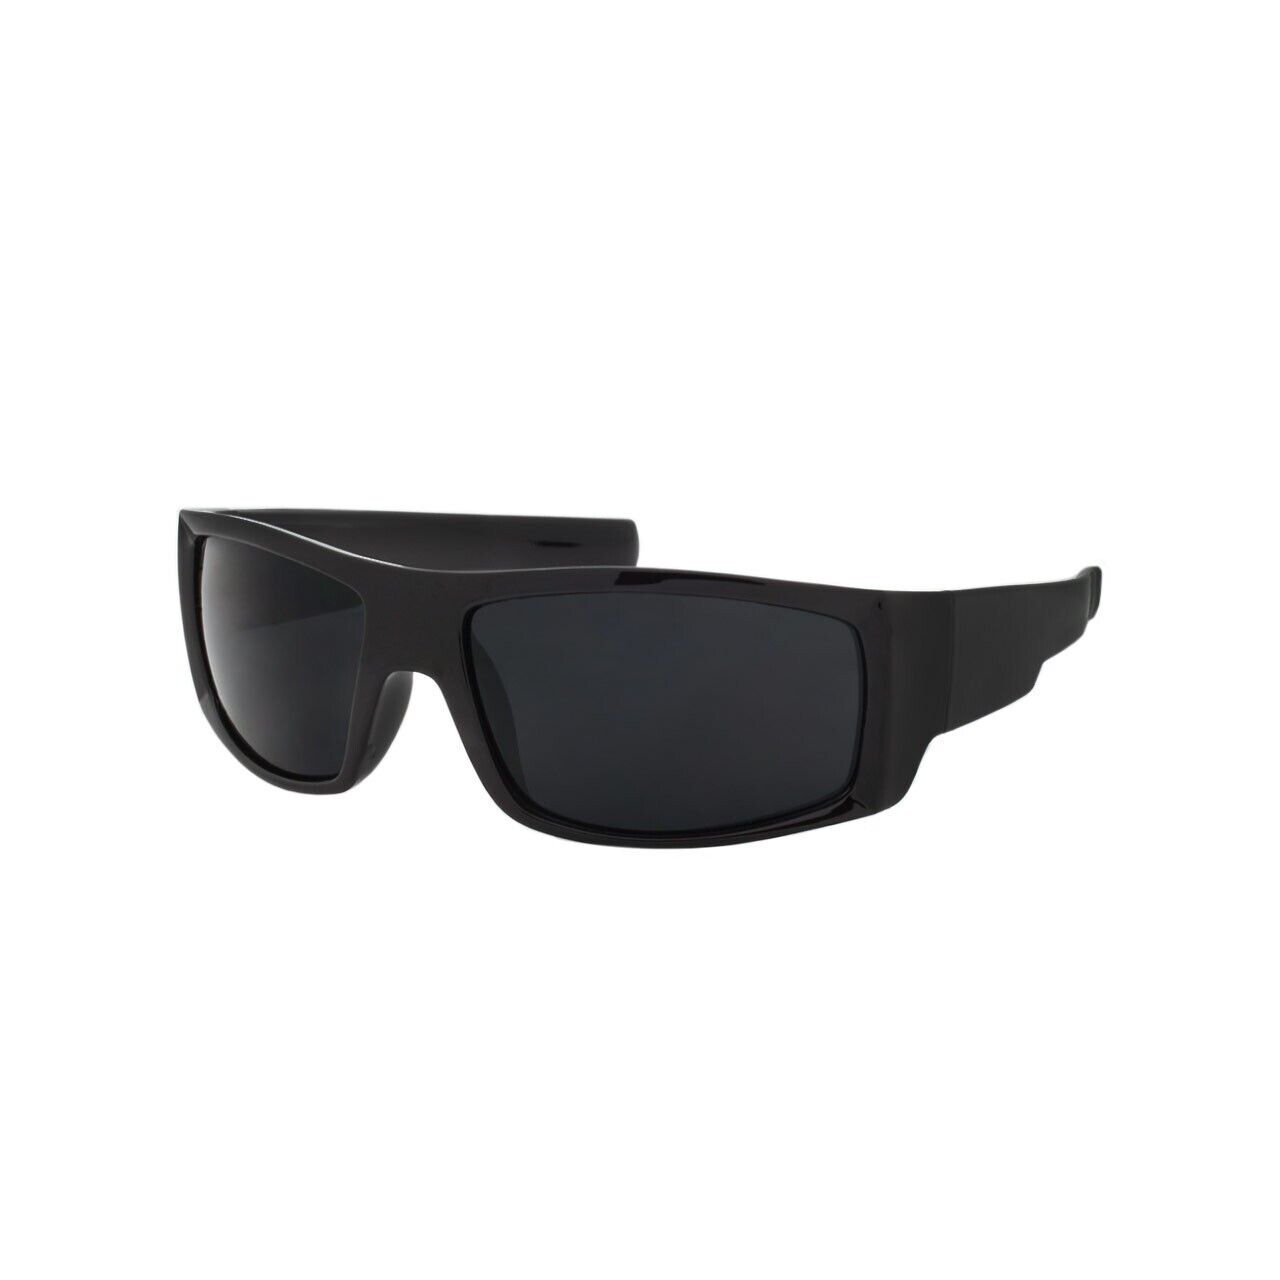 Mens Sunglasses OG Super Dark Lens Biker Wrap Locs Like Style Sport Style New